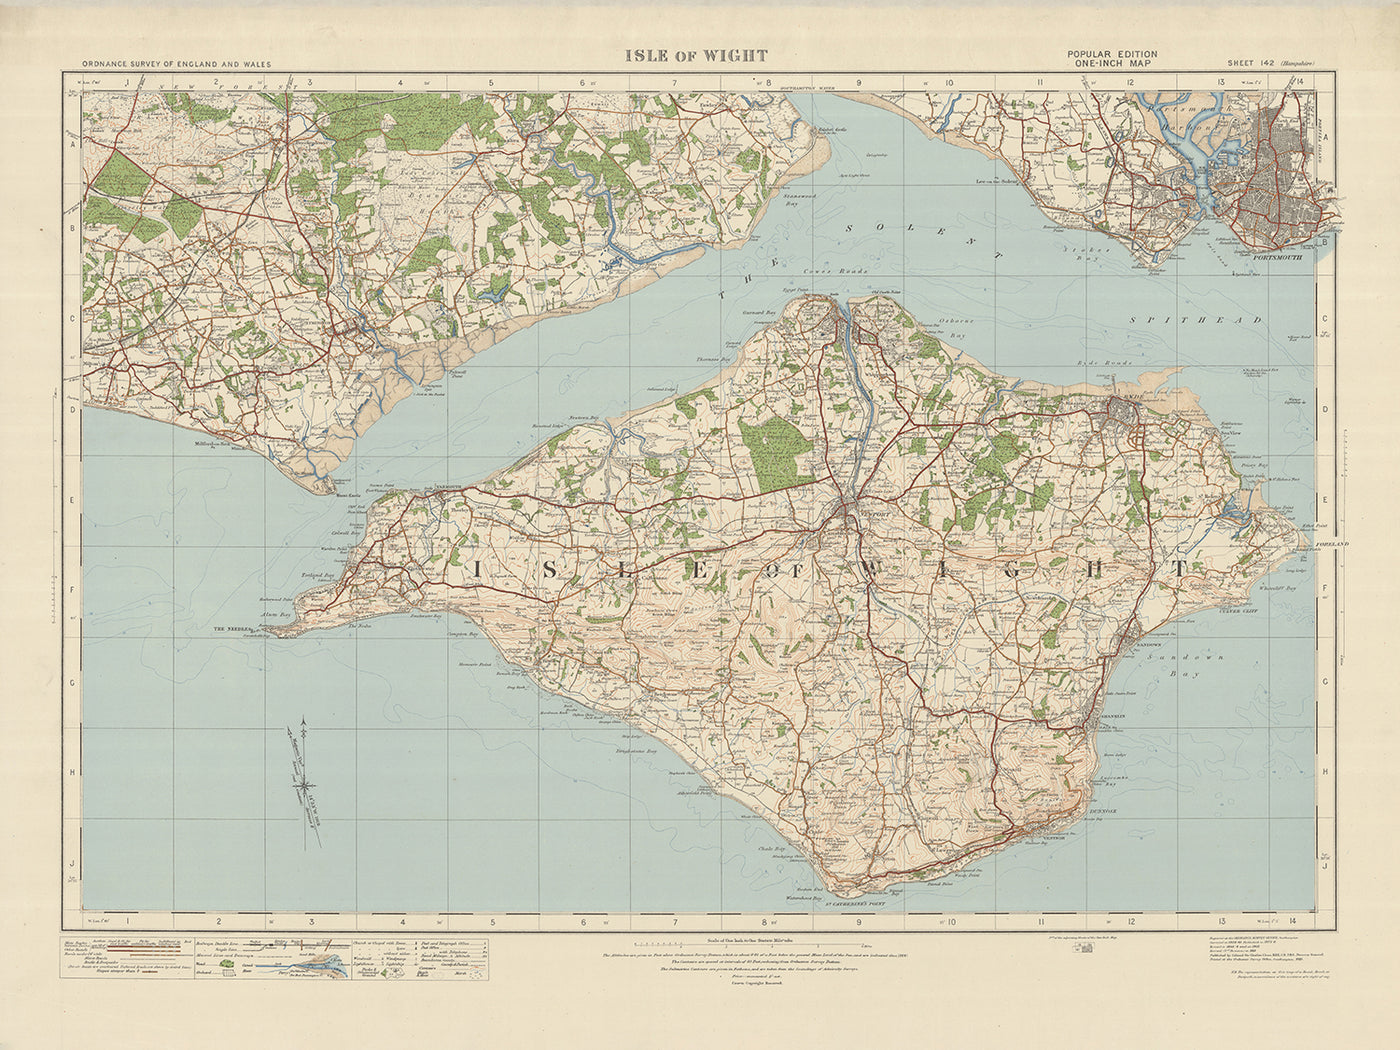 Ancienne carte de l'Ordnance Survey, feuille 142 - Île de Wight, 1919-1926 : Portsmouth, Newport, Ryde, Cowes, Gosport, Carisbrooke Castle, The Needles, Osborne House